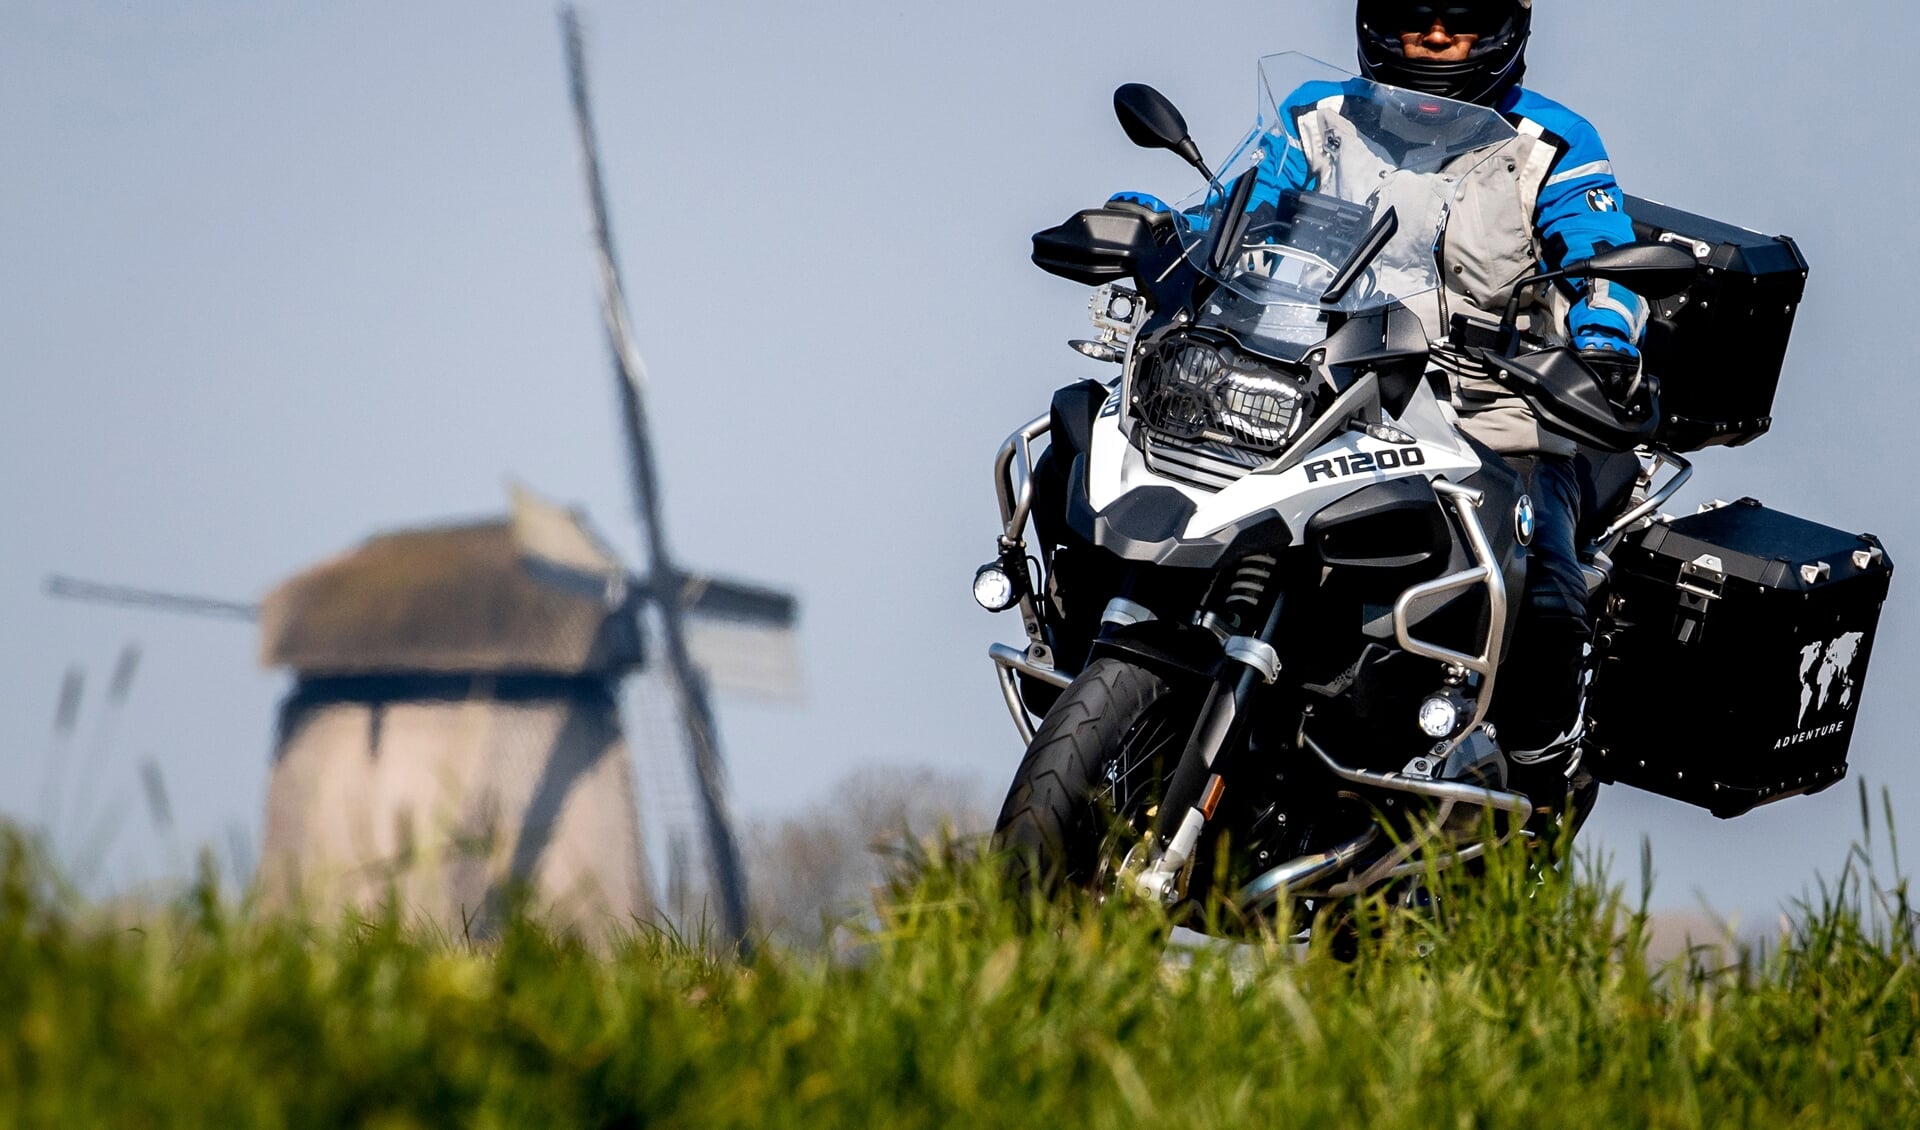 In de gemeente Amersfoort is motorrijden minder populair. Amersfoort telt 36 motoren per 1000 inwoners en zit daarmee onder het landelijk gemiddelde. 